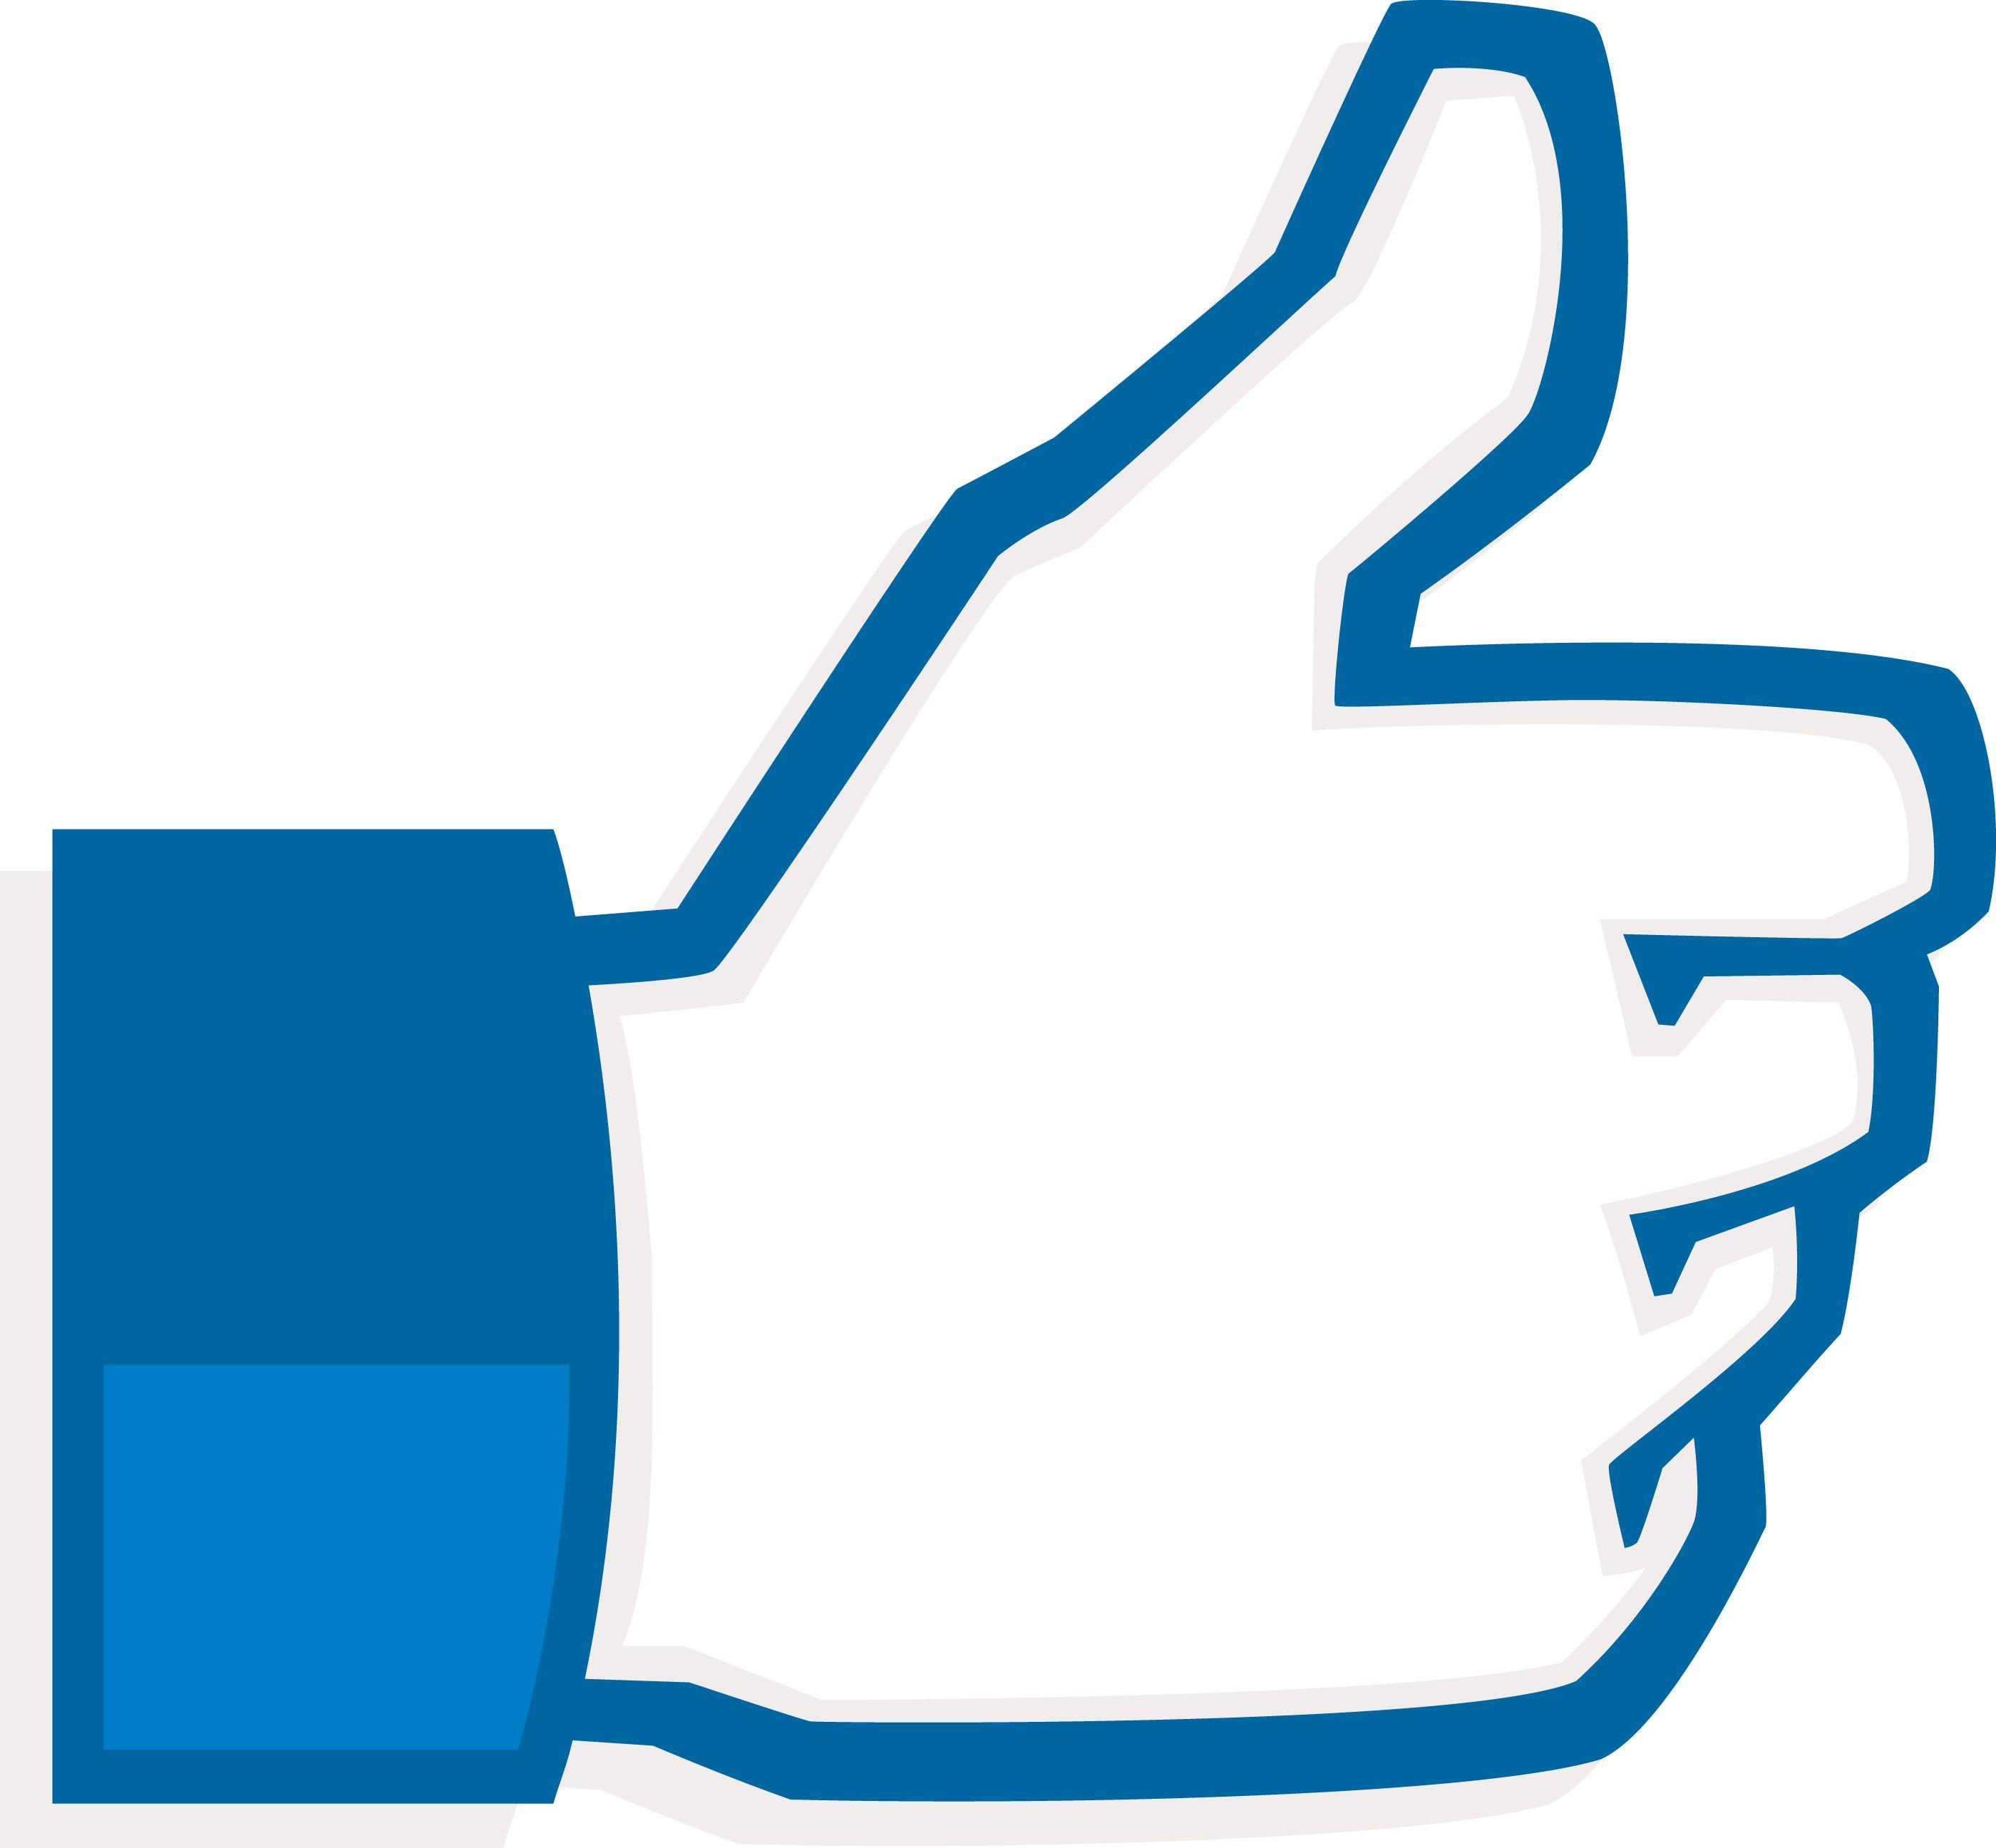 Facebook Thumb Logo - Vector library library facebook dislike logo